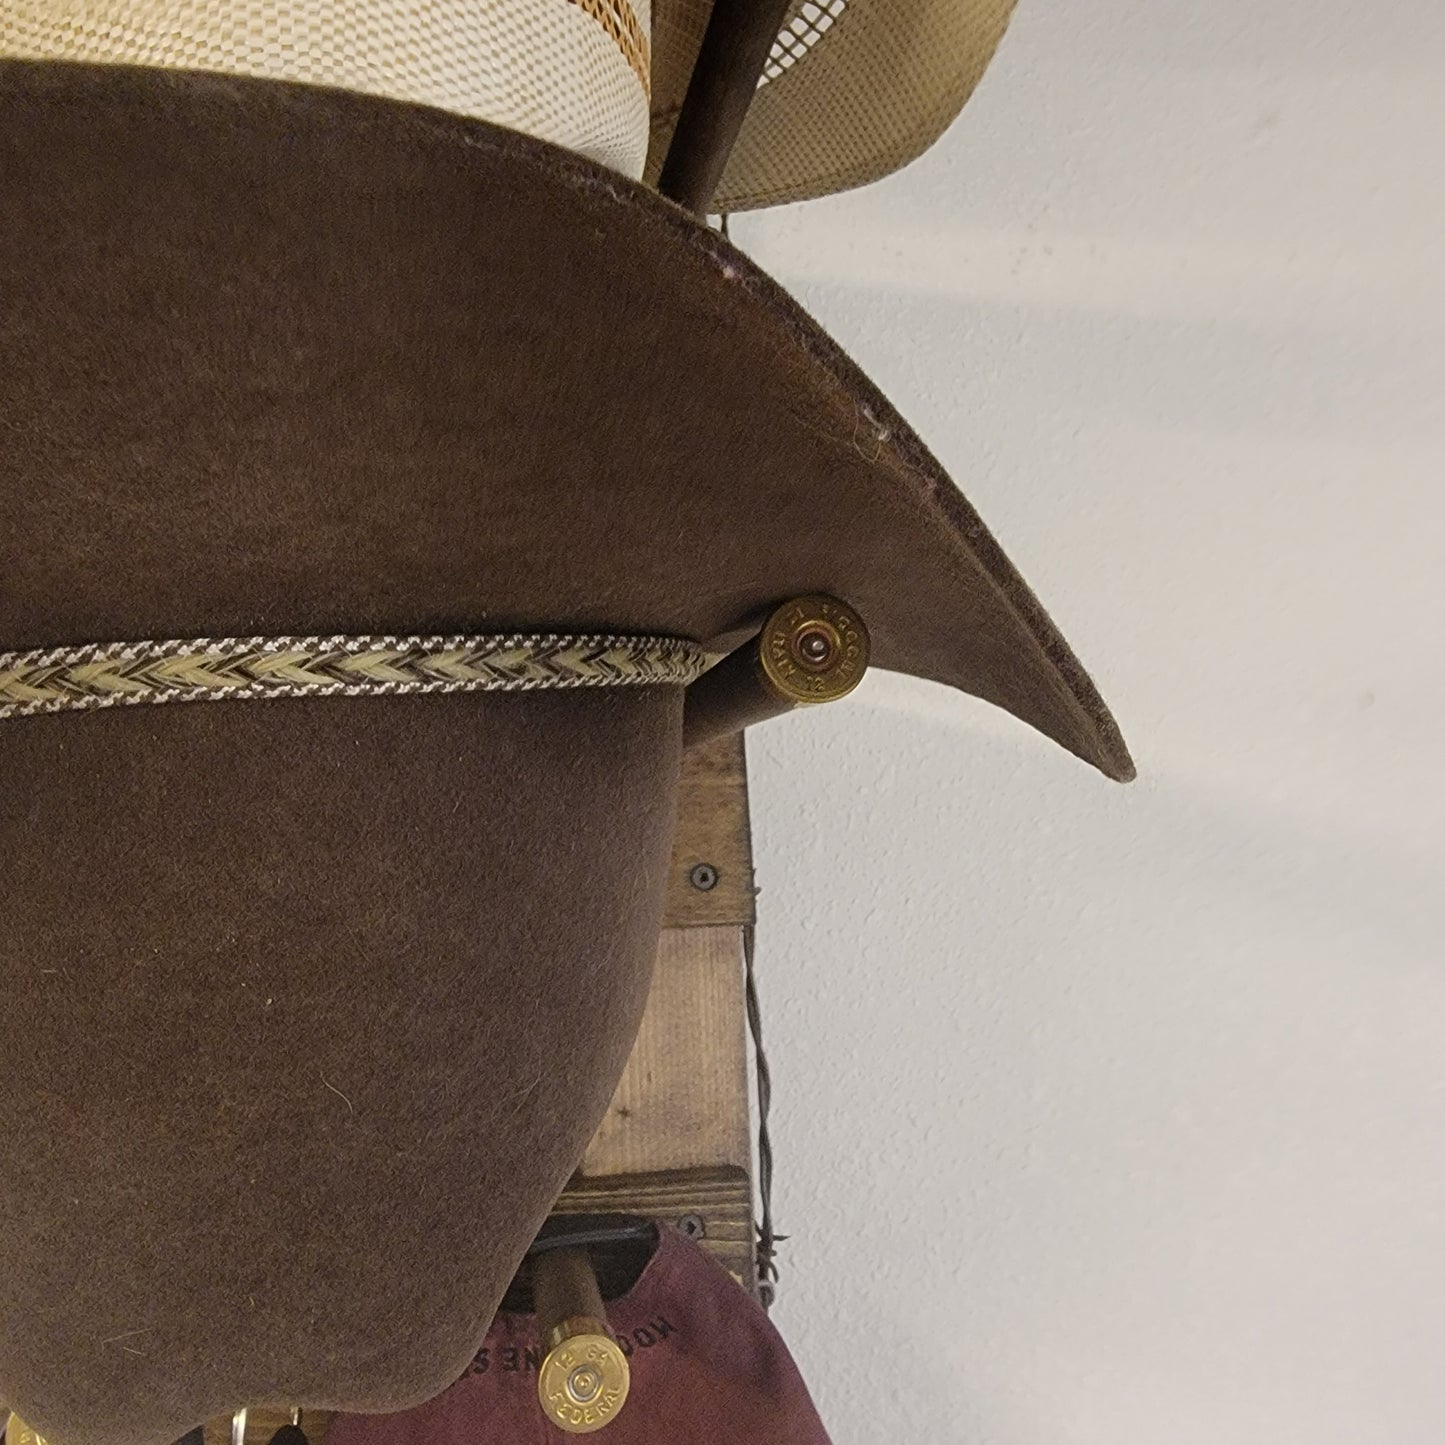 3V - Cowboy Hat Rack - 3 Hat Vertical